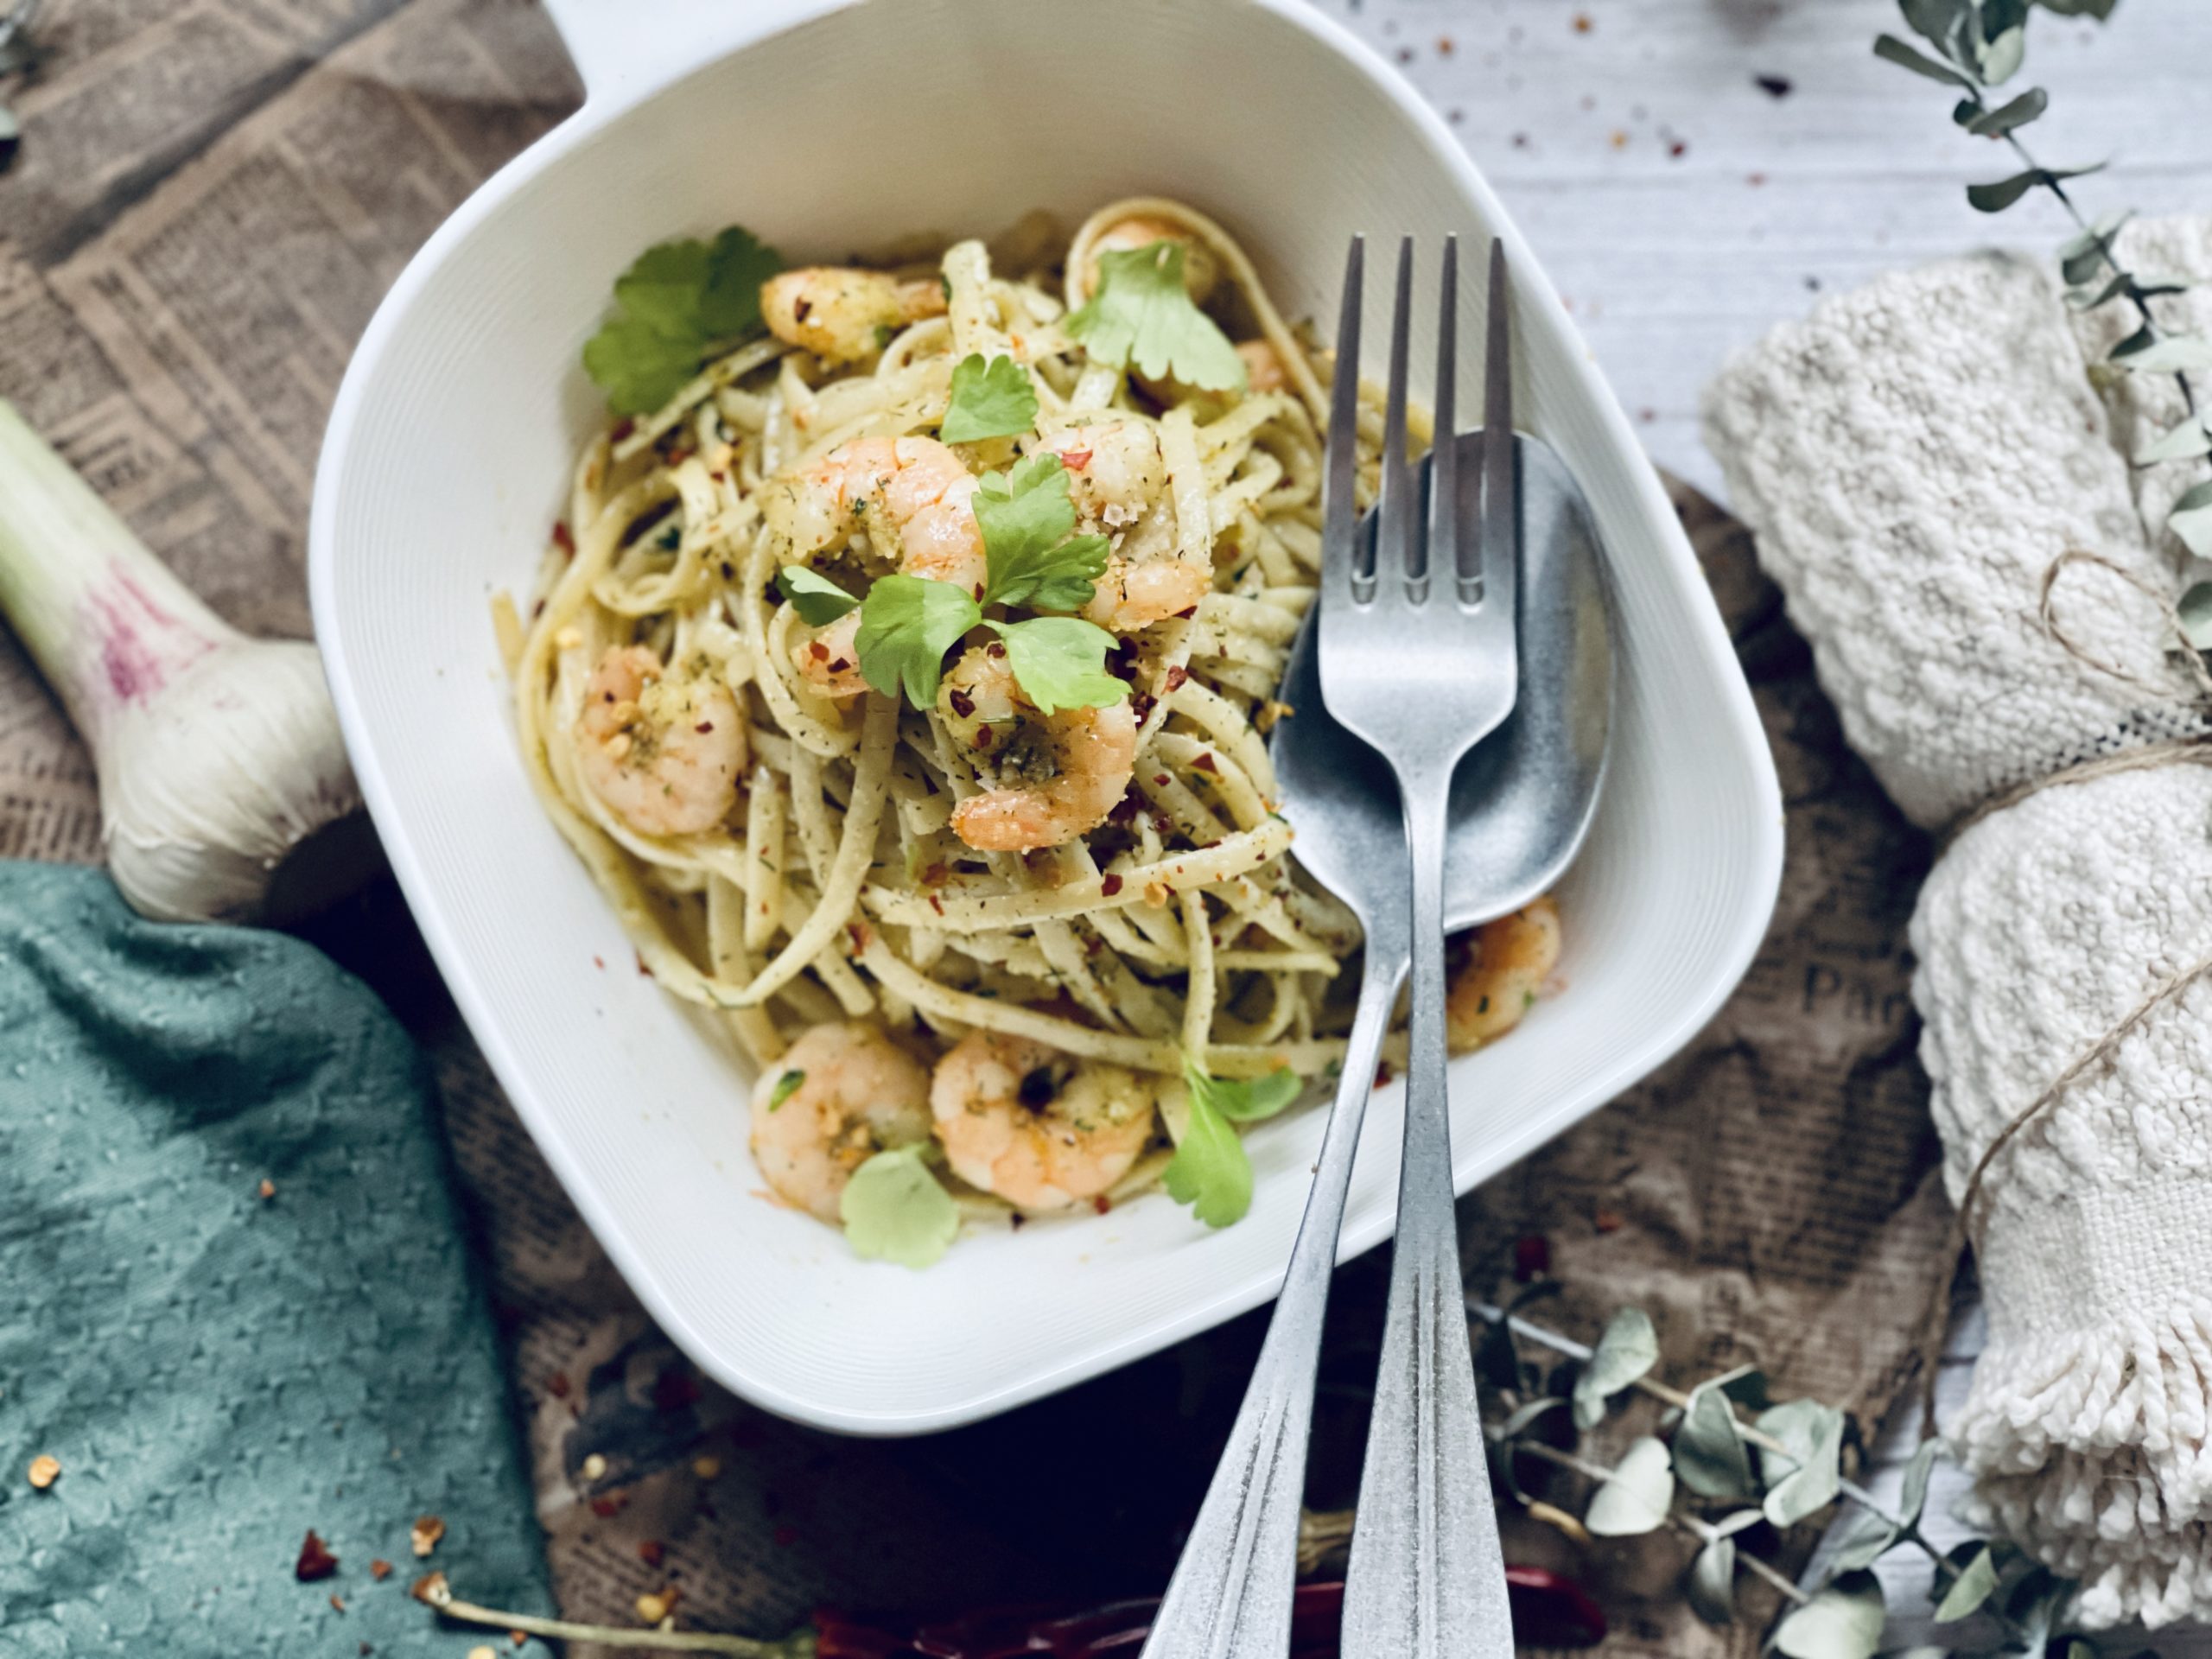 Spaghetti Aglio e olio mit Scampi Rezept - Jussilicious-Foodblog